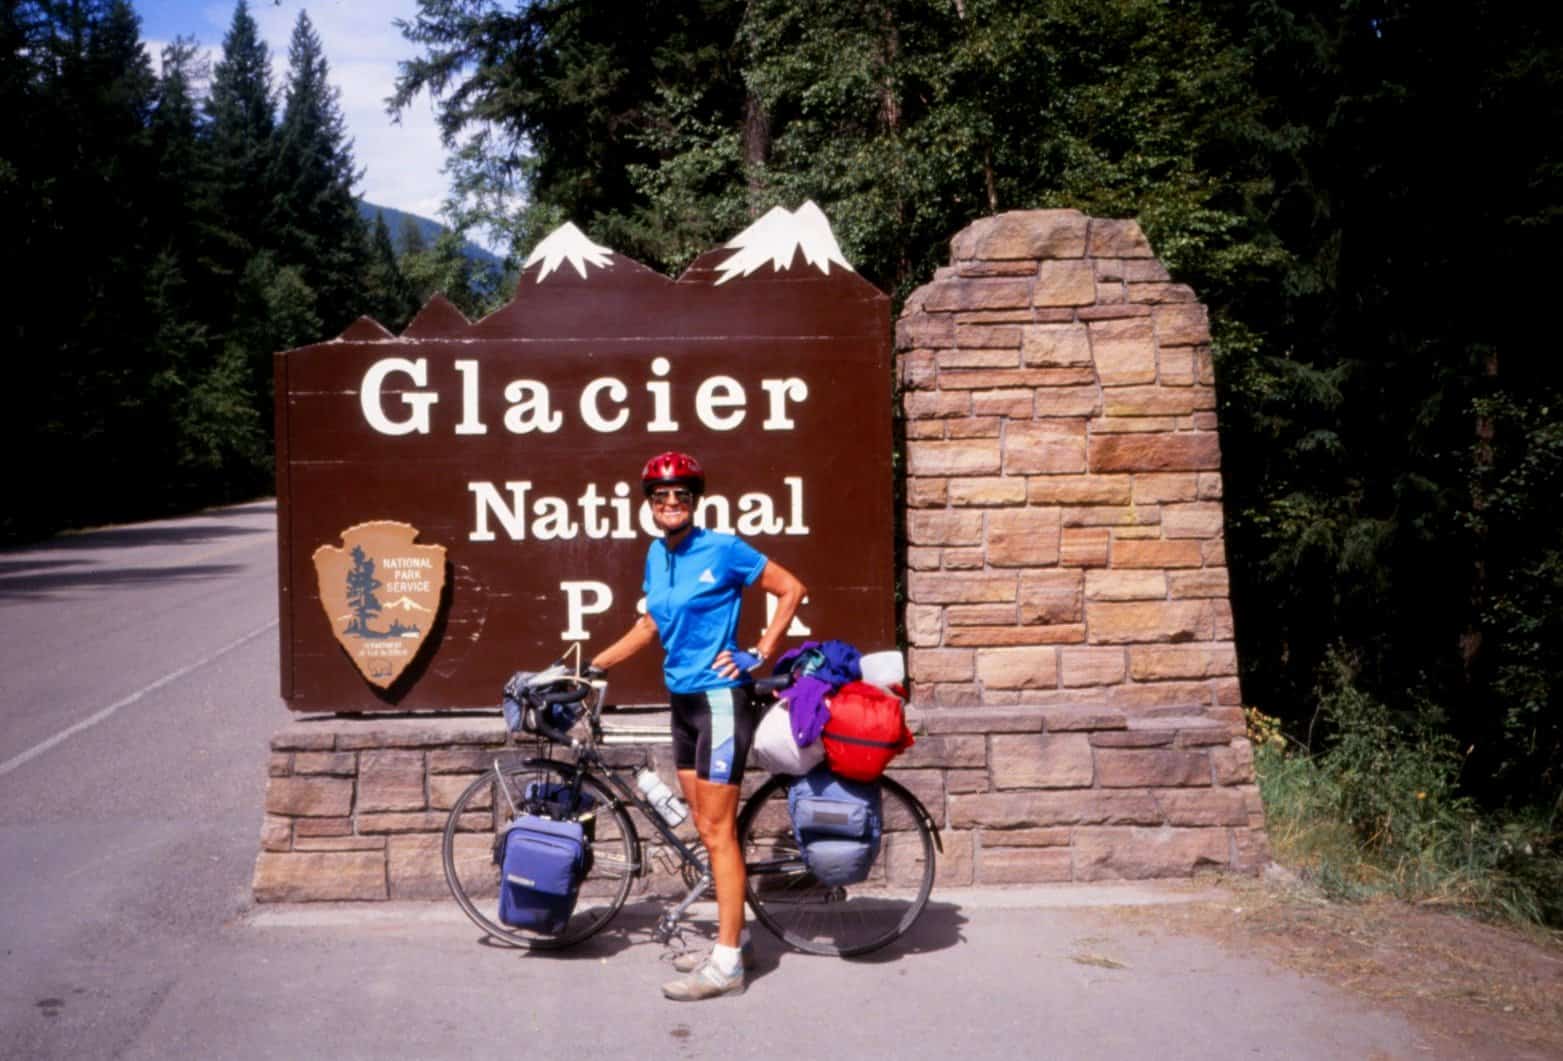 Entering Glacier National Park